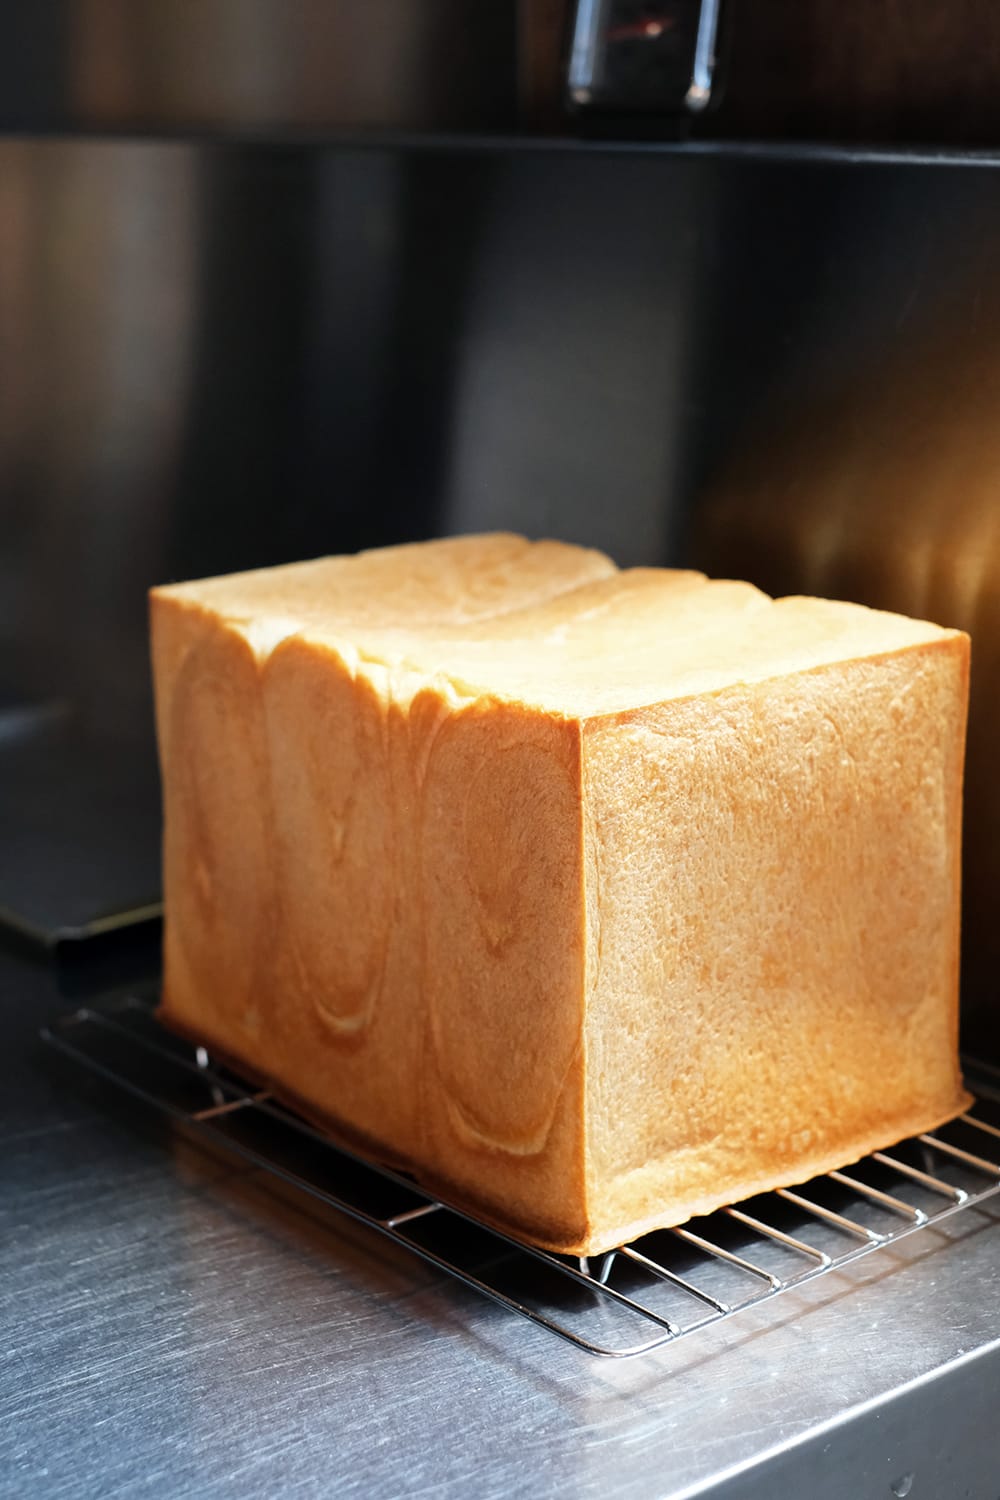 焼き上がったばかりの1.5斤の自家製生食パン